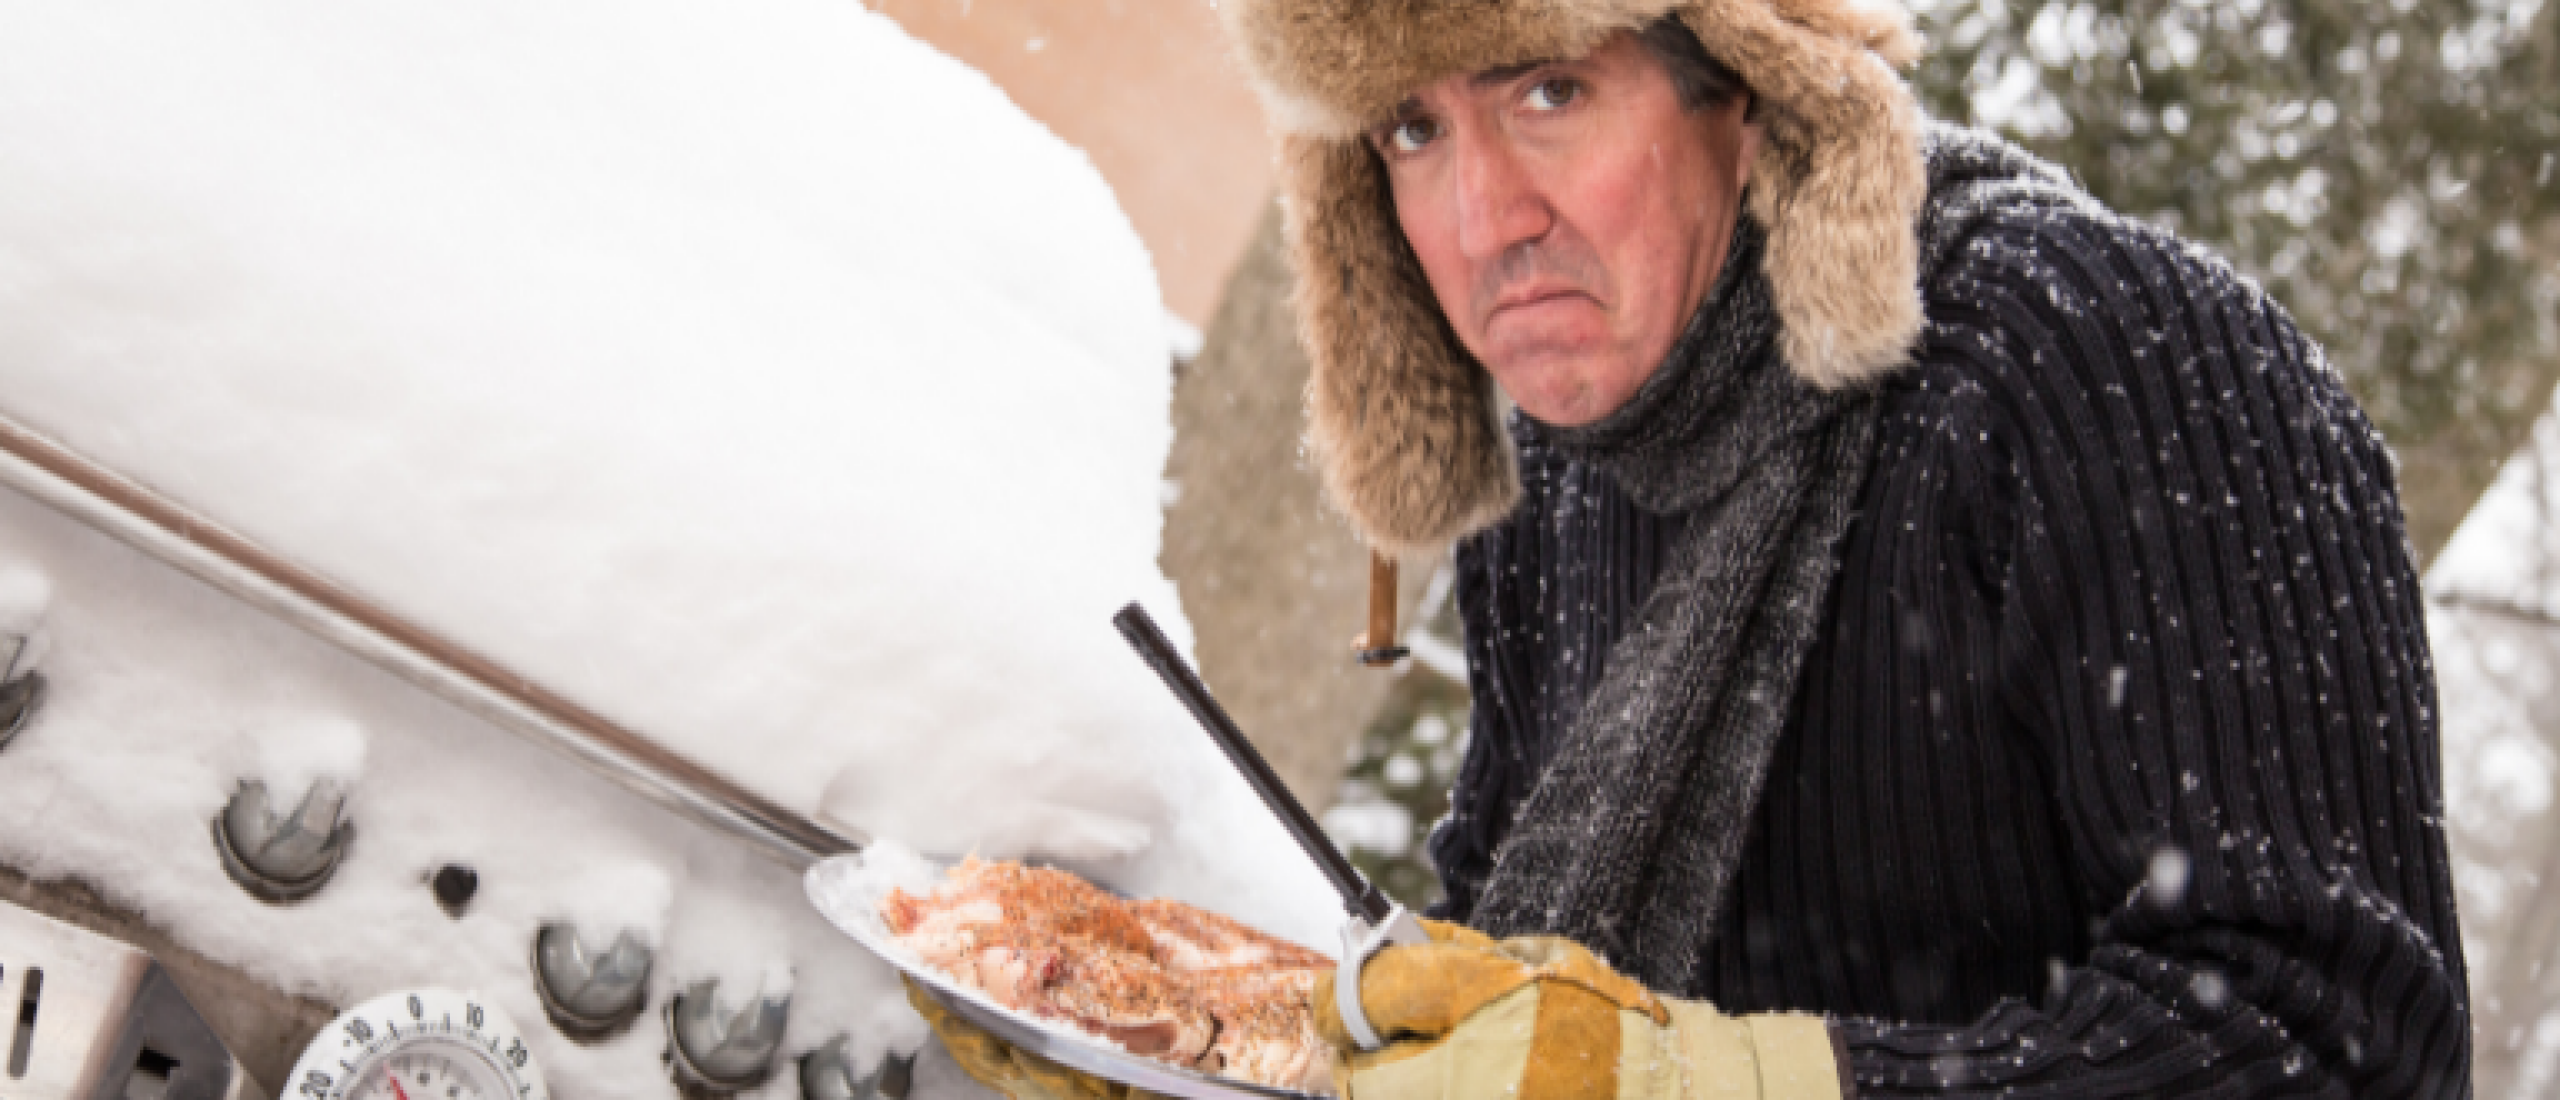 BBQ-recepten voor de winter: Grillen in koude temperaturen